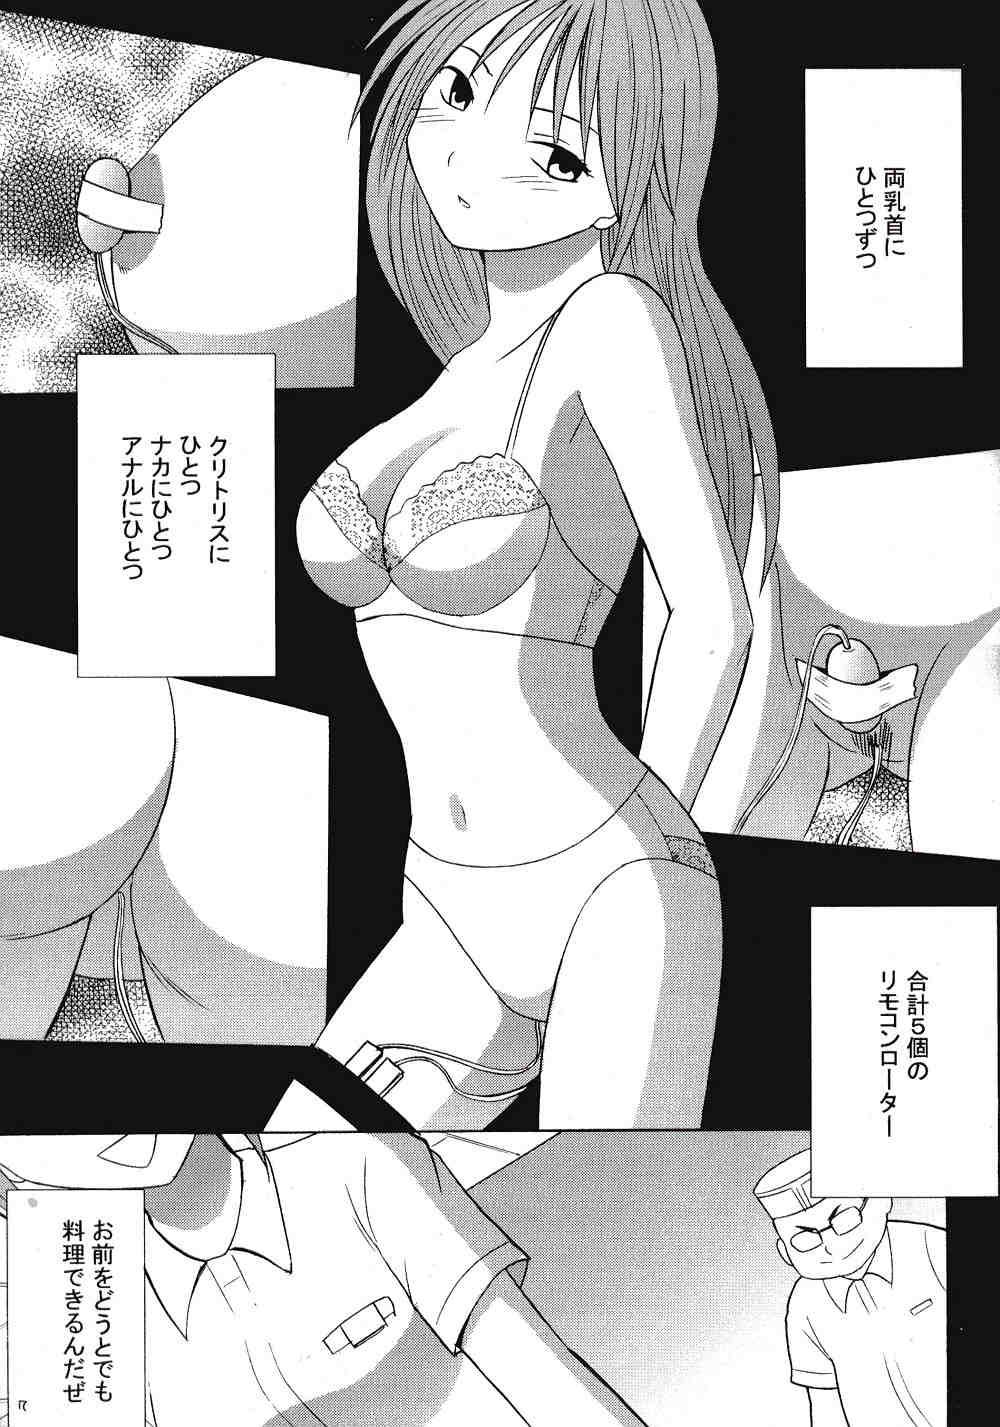 Casero IchigoIchie 2 - Ichigo 100 Stepdaughter - Page 6